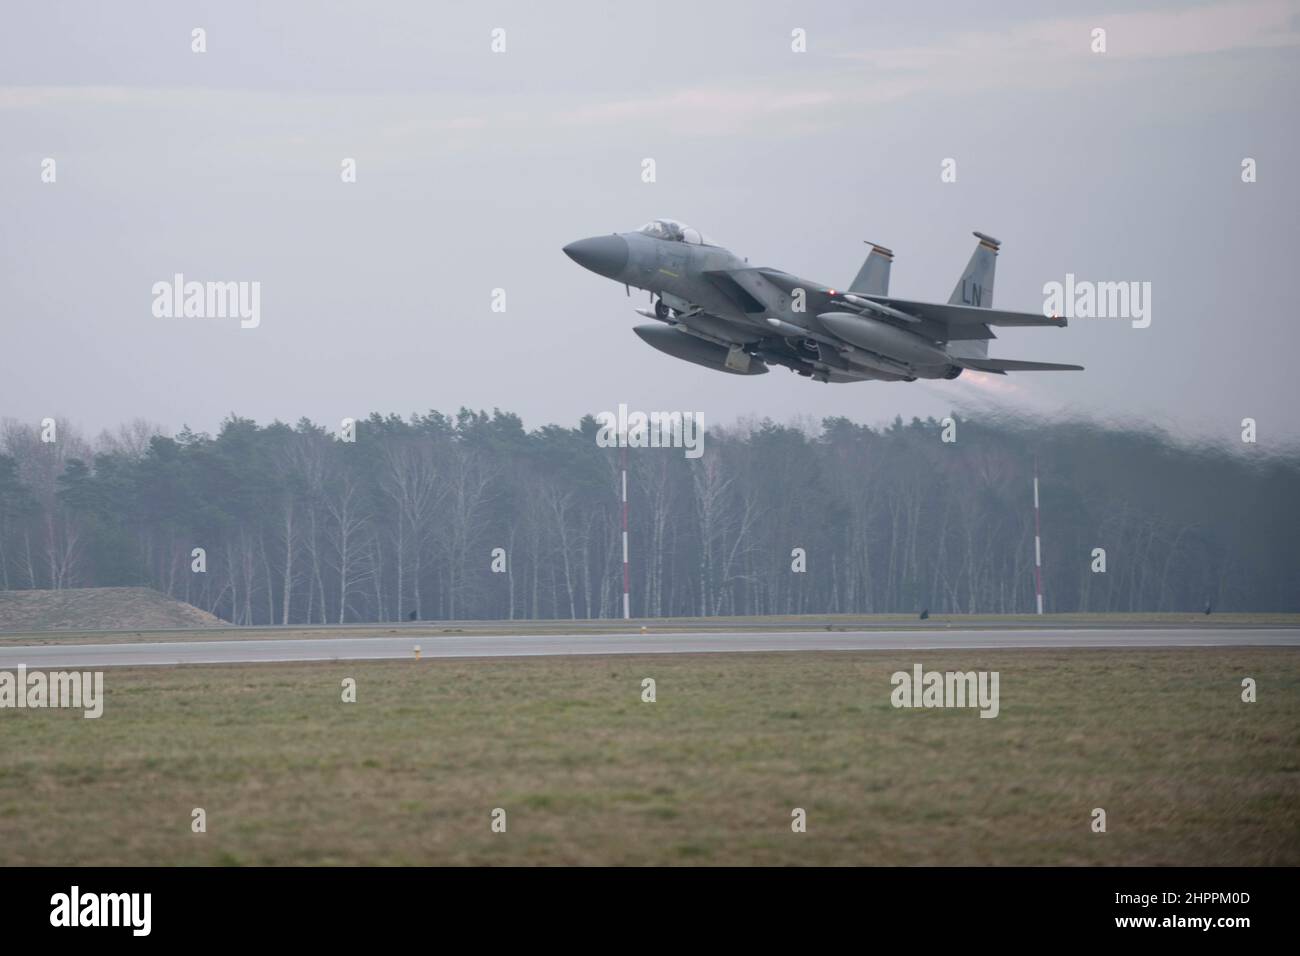 Un aigle F-15C de la Force aérienne des États-Unis affecté à l'escadron de chasse 493rd, la Royal Air Force (RAF) Lakenheath prend son envol à l'appui de missions de police aérienne renforcée de l'Organisation du Traité de l'Atlantique Nord (OTAN) avec la Force aérienne polonaise à la base aérienne de Łask, en Pologne, le 15 février 2022. L’intégration et l’entraînement de la Défense aérienne démontrent les capacités, la volonté et la détermination de l’OTAN à protéger les populations alliées. (É.-U. Photo de la Force aérienne par Tech. Sgt. Jacob Albers) Banque D'Images